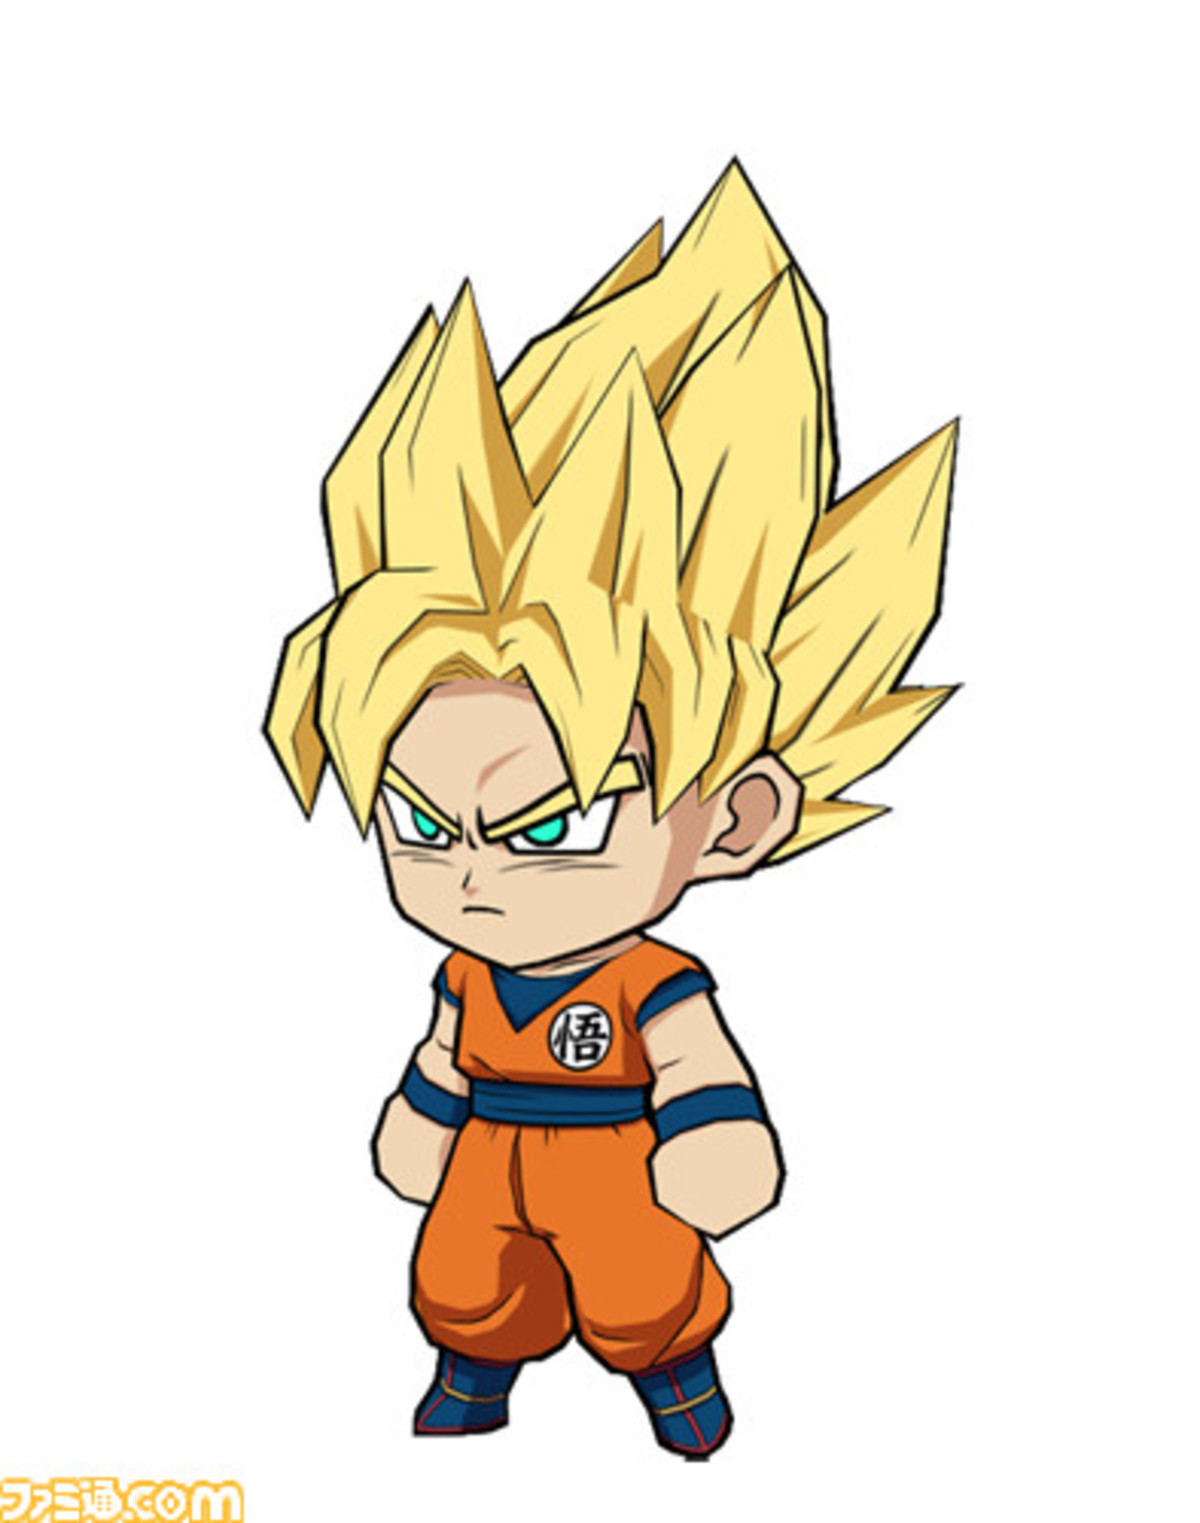 Chibi SSJ1 Goku